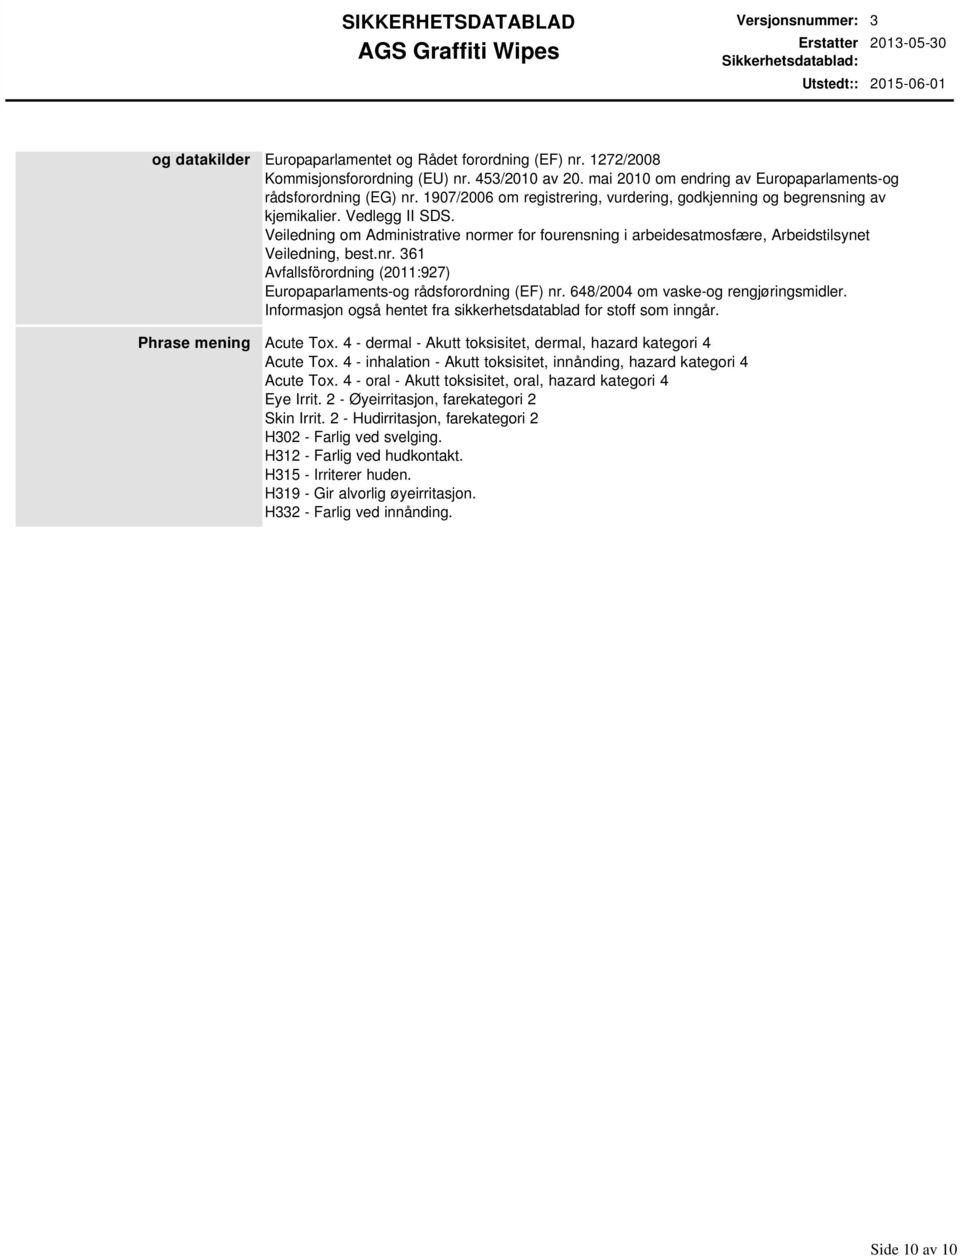 Veiledning om Administrative normer for fourensning i arbeidesatmosfære, Arbeidstilsynet Veiledning, best.nr. 361 Avfallsförordning (2011:927) Europaparlaments-og rådsforordning (EF) nr.